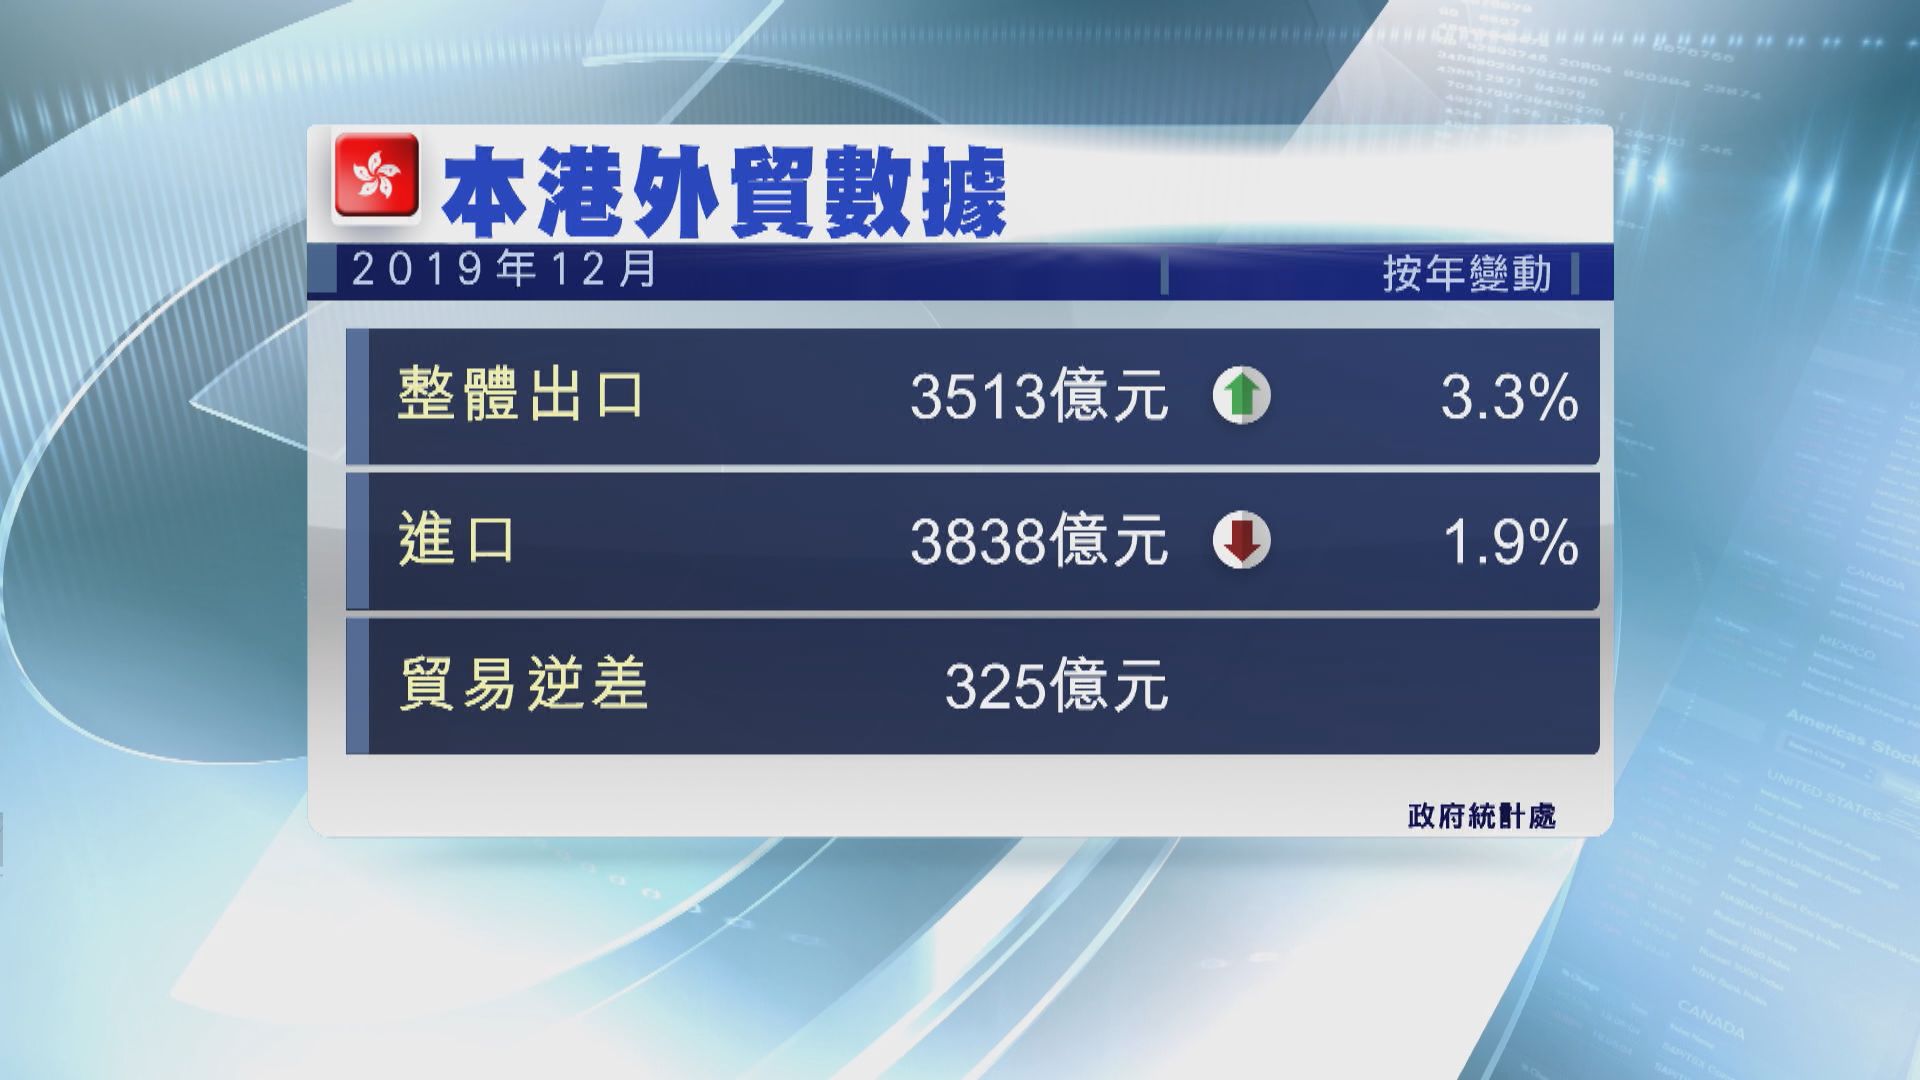 【扭轉跌勢】去年12月香港整體出口升3.3% 勝預期